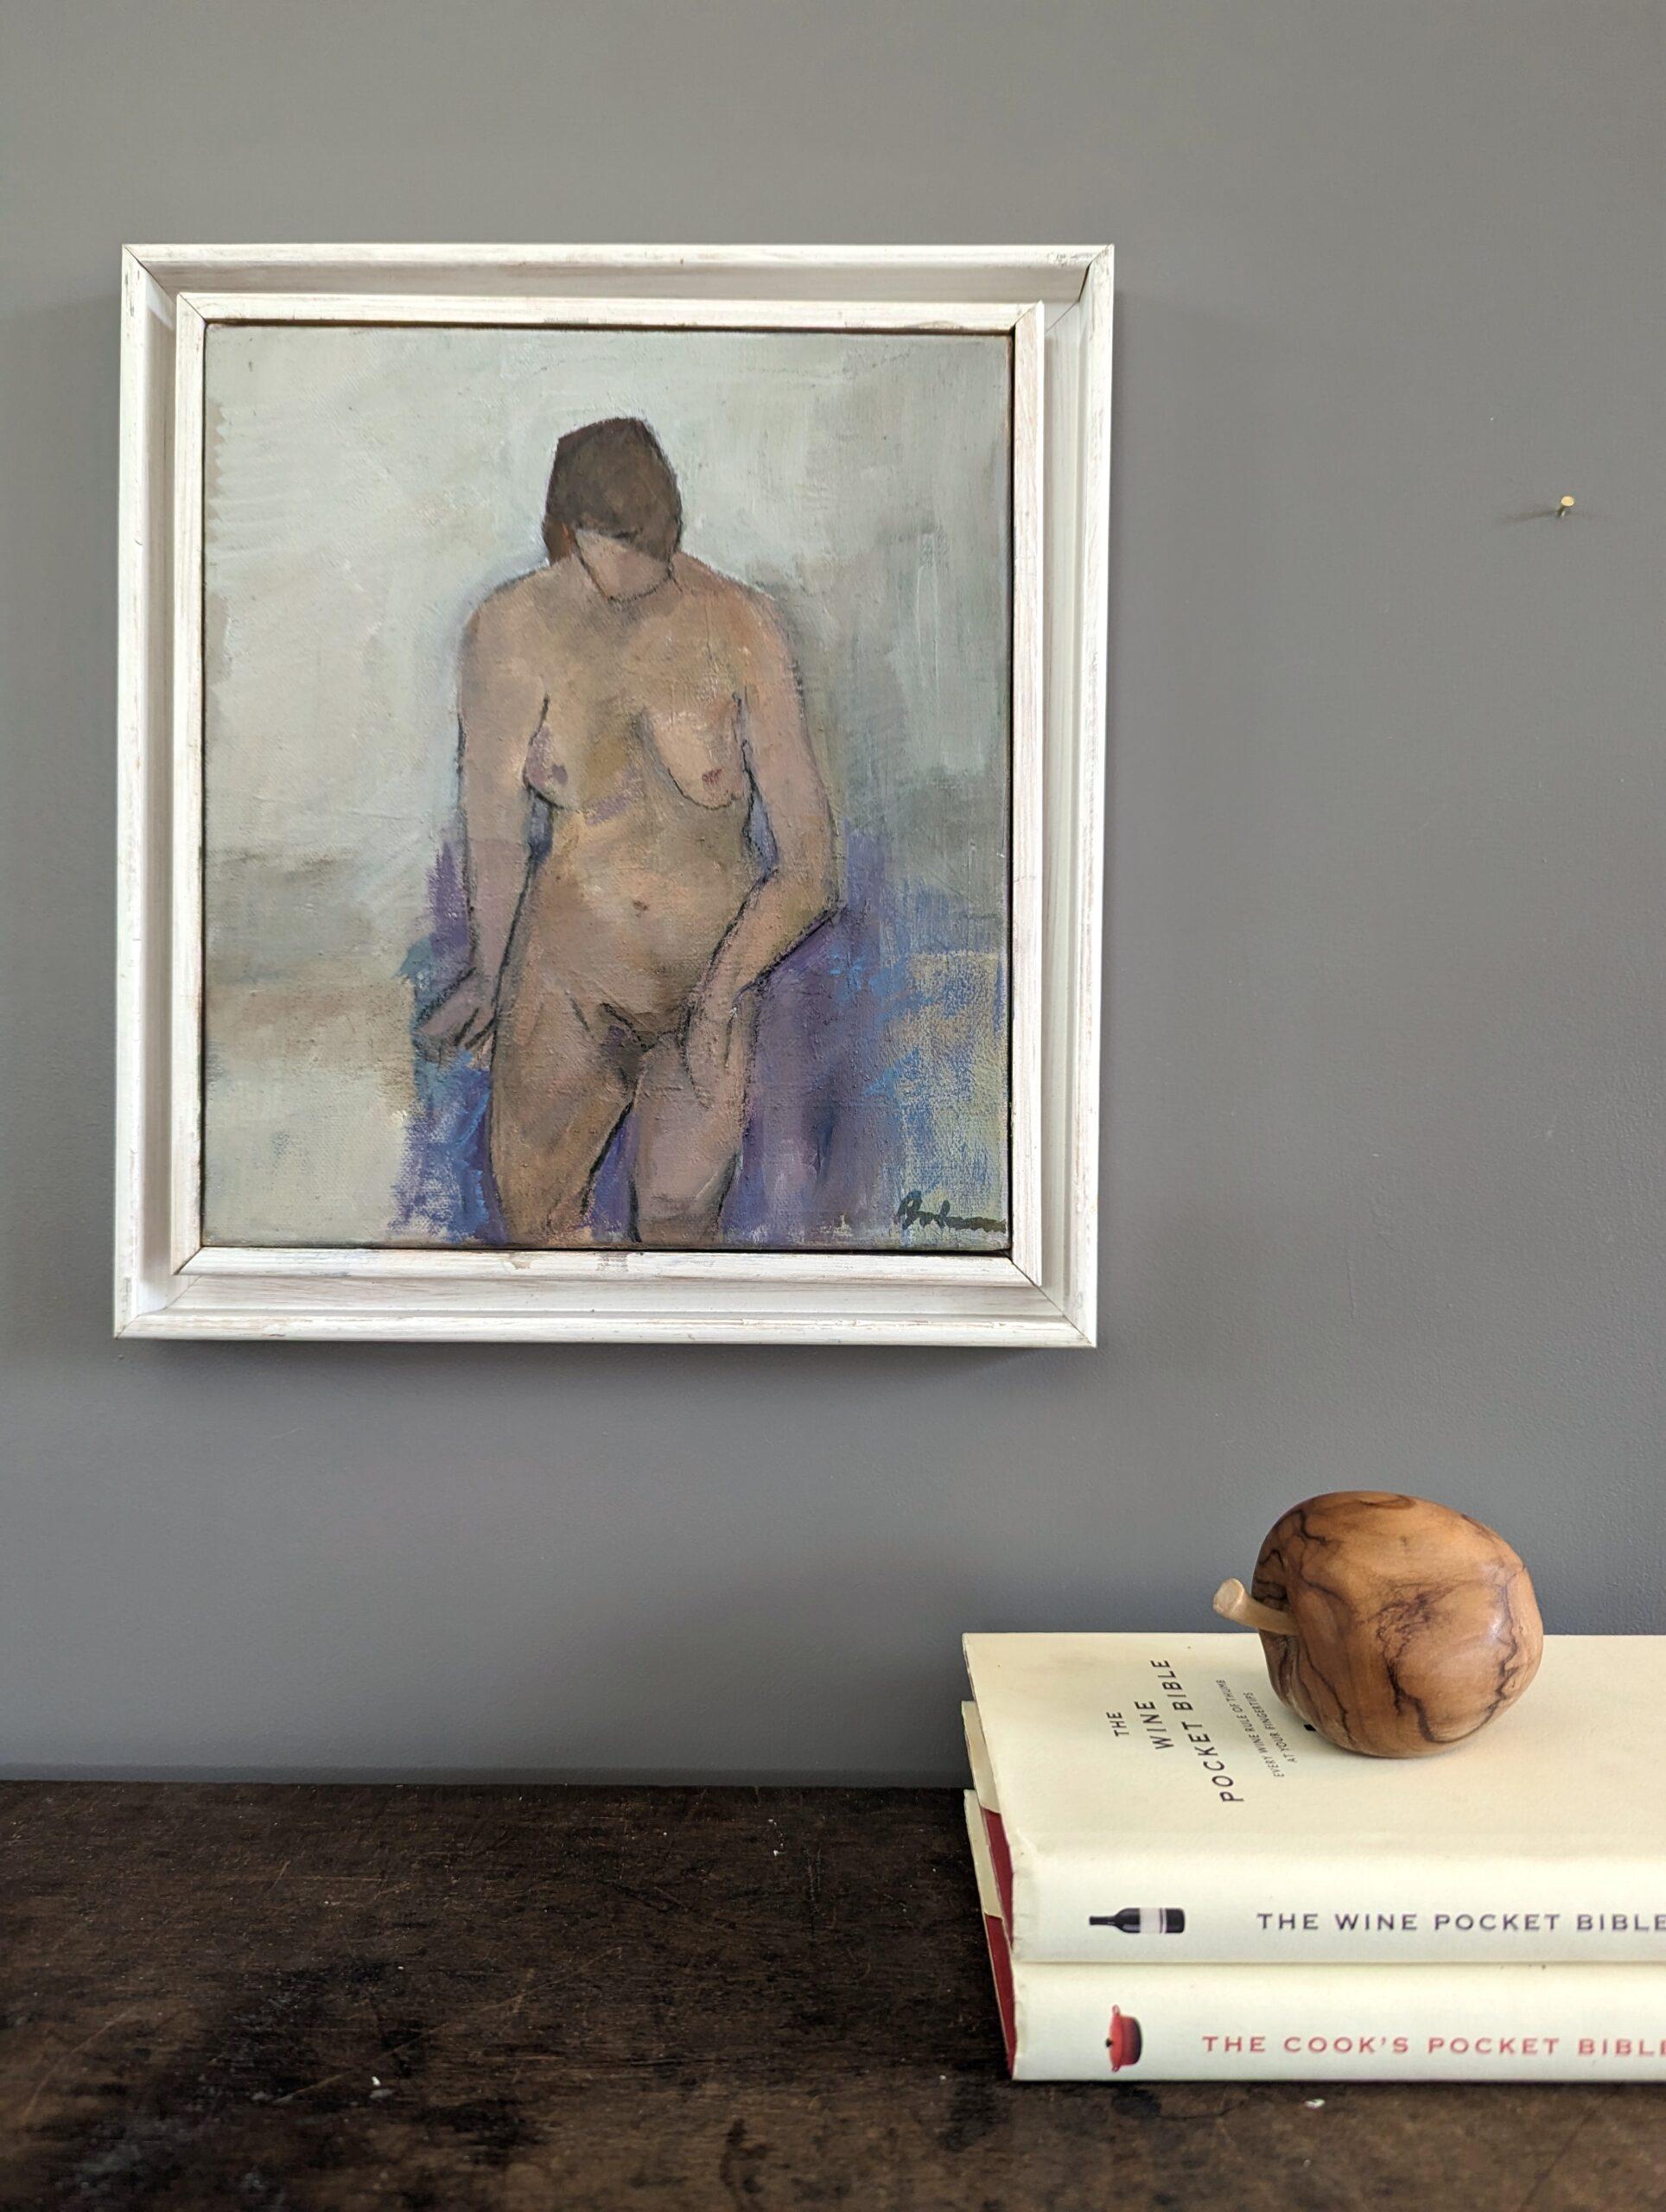 NU SUR UNE CHAISE VIOLETTE
Huile sur toile 
Taille : 29,5 x 26,5 cm (cadre compris)

Composition tendre et contemplative d'un portrait de nu, peint à l'huile sur toile.

L'artiste explore la présence sereine d'une figure féminine nue, délicatement